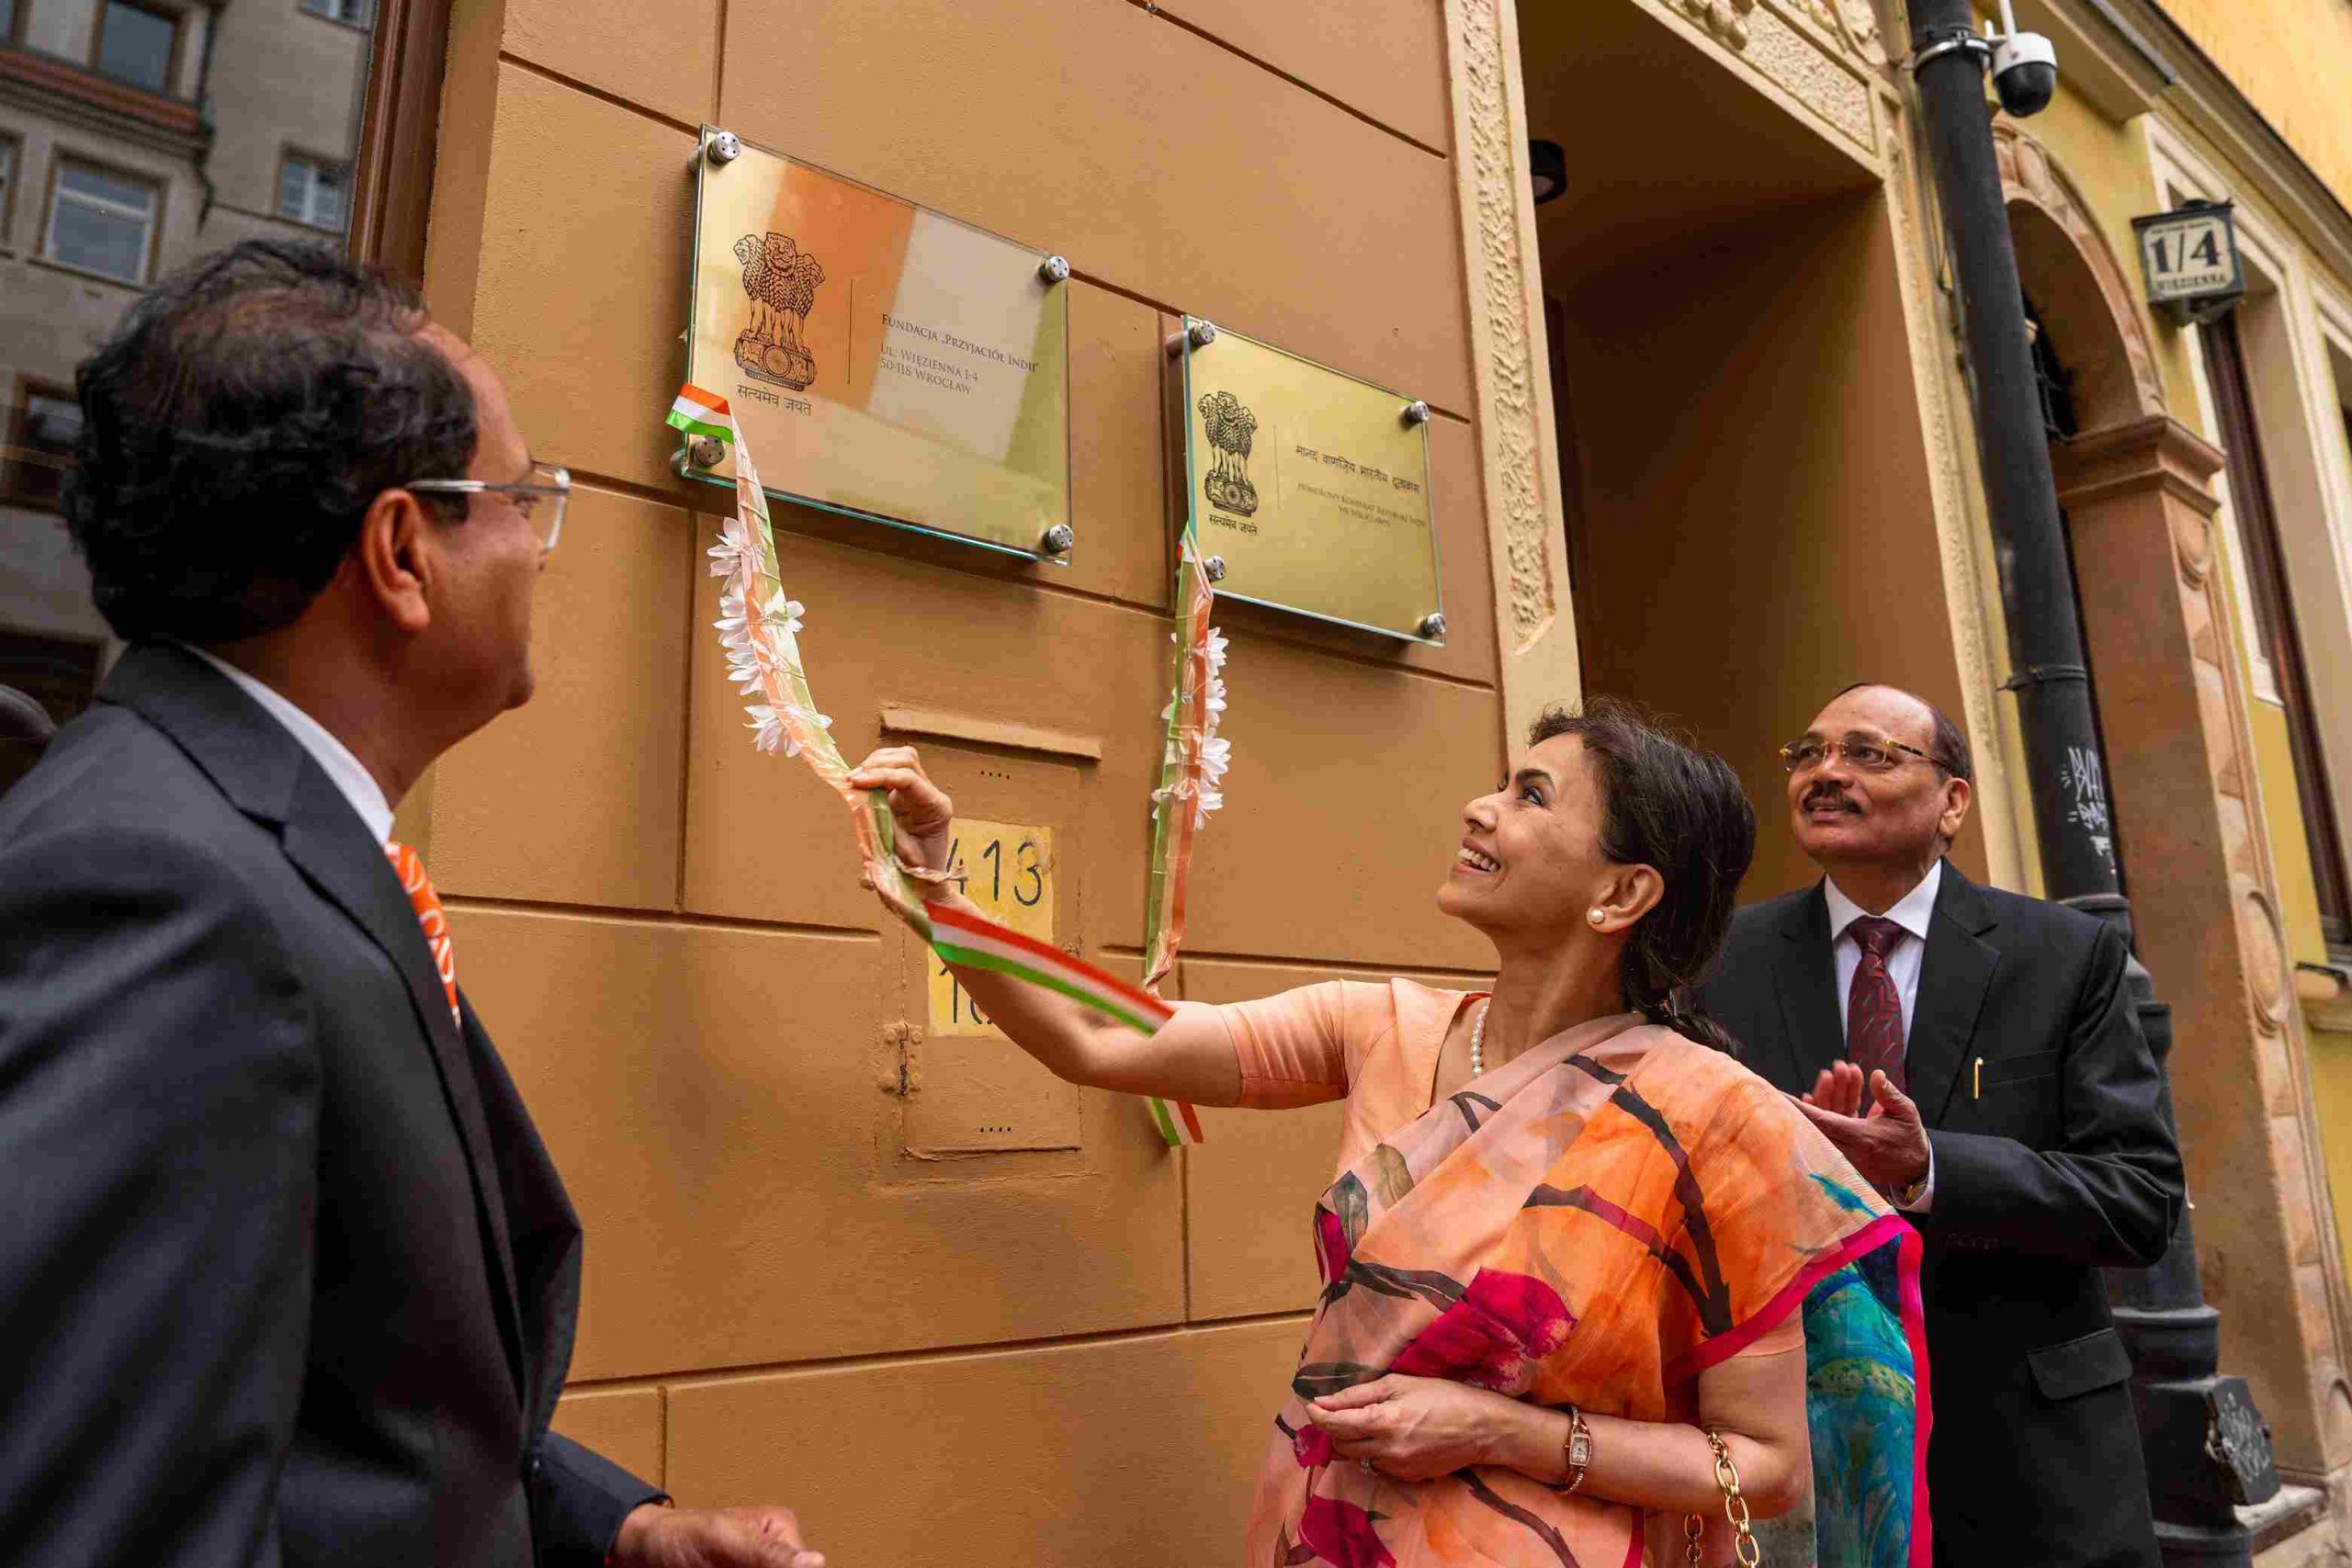 Konsulat Honorowy Indii we Wrocławiu działa od 2018 roku. 7 czerwca miało miejsce oficjalne otwarcie jego nowej siedziby przy ul. Więziennej.